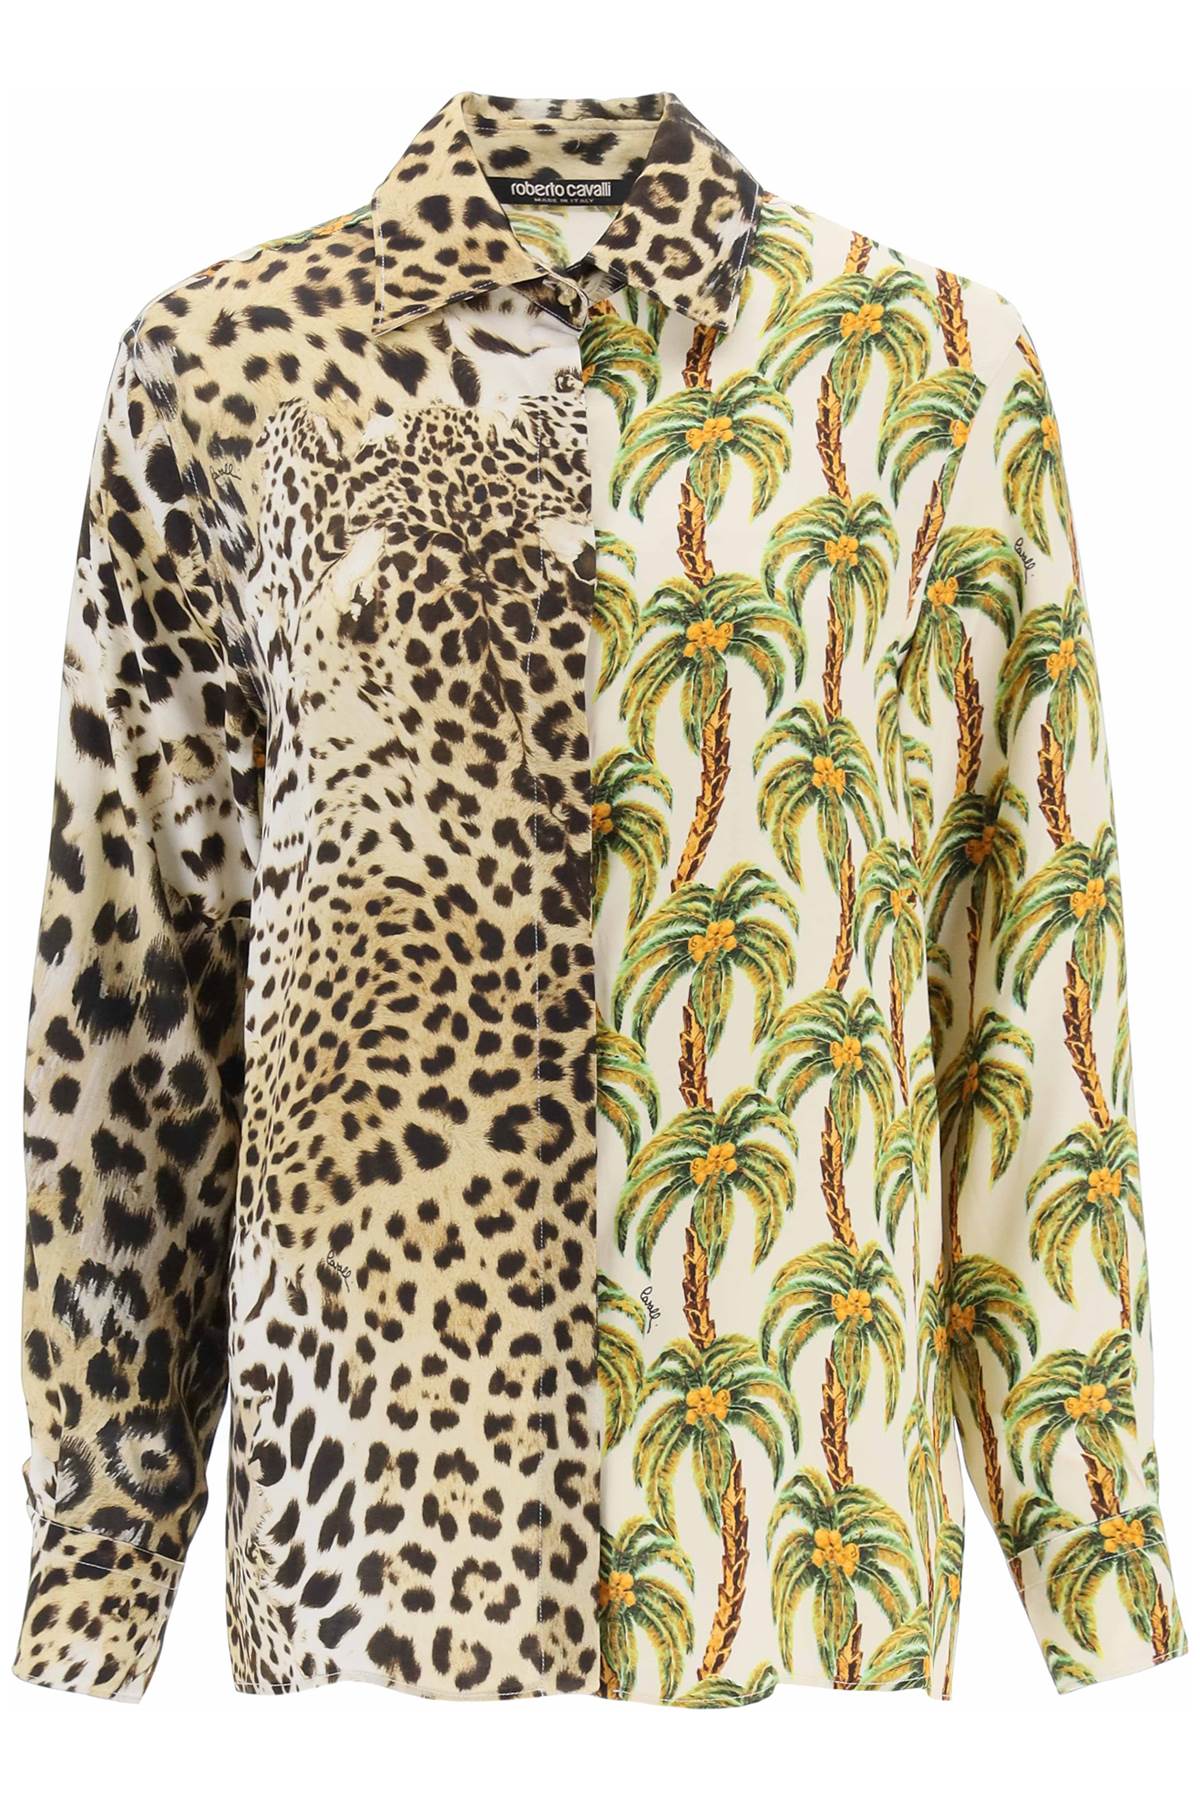 roberto cavalli-camicia con stampe jaguar e palme-donna